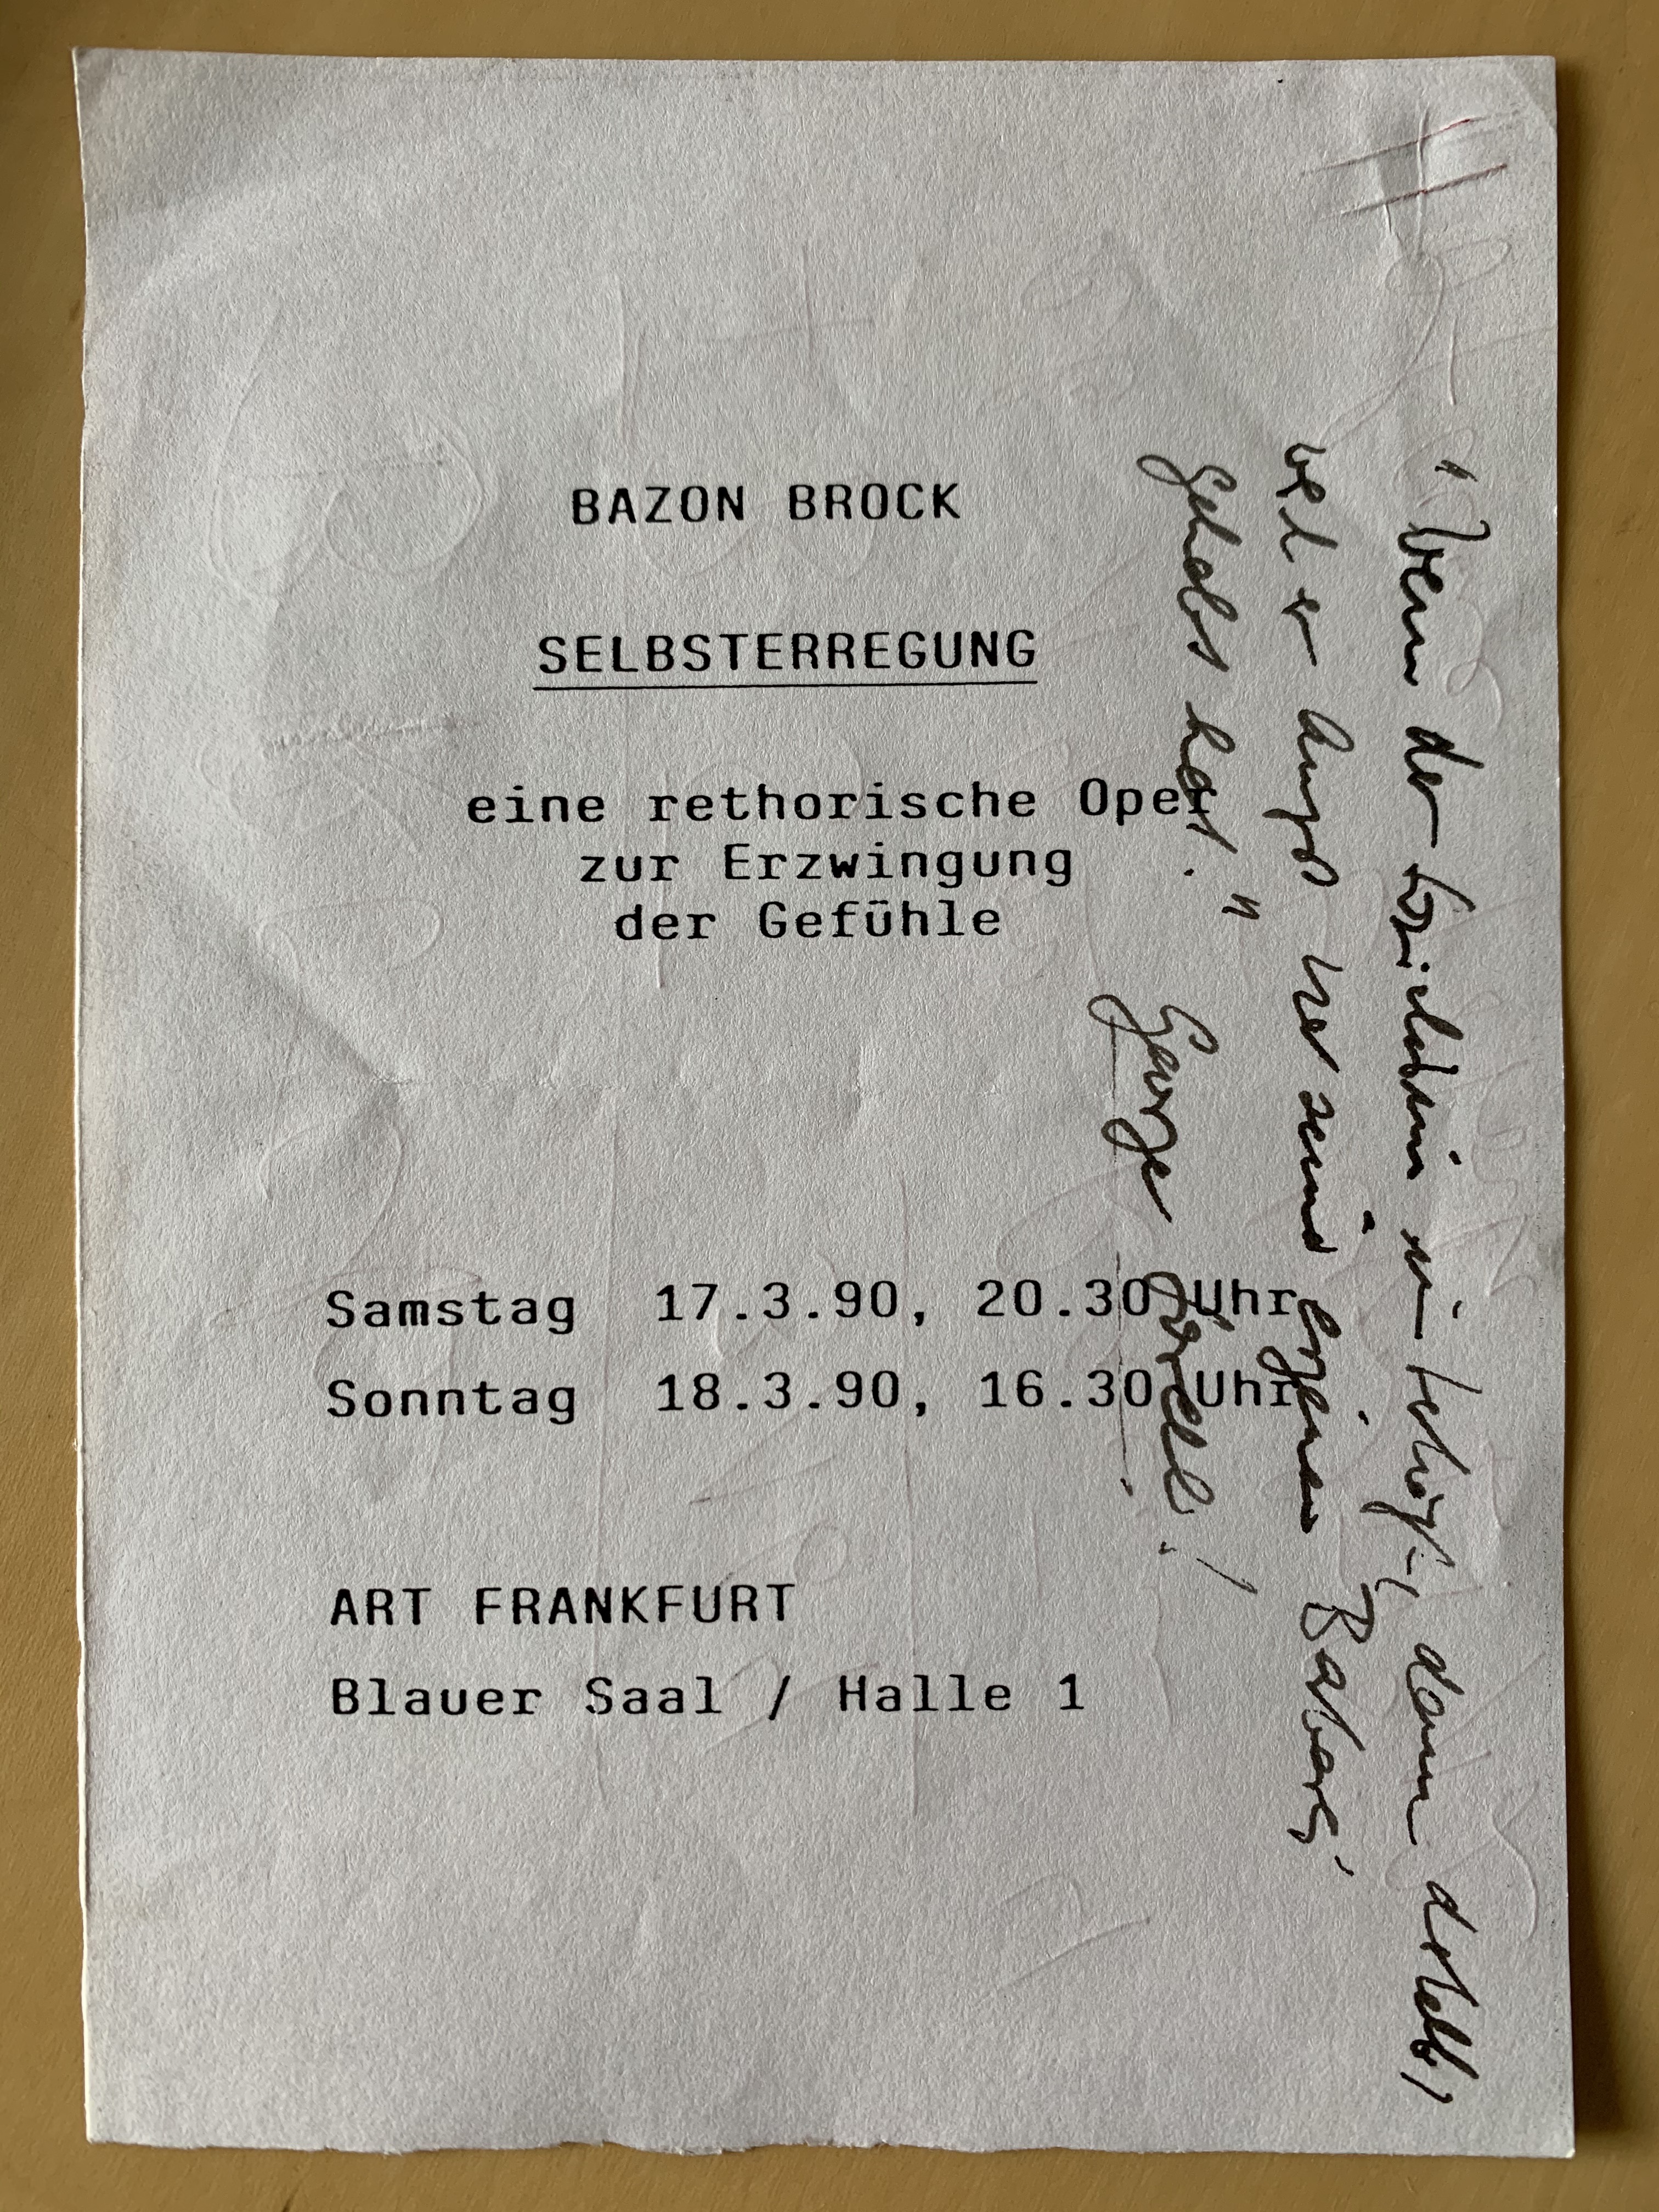 Selbsterregung - eine rhetorische Oper zur Erzwingung der Gefühle, Bild: Art Frankfurt, 17./18.3.1990 (Flyer Vorderseite).